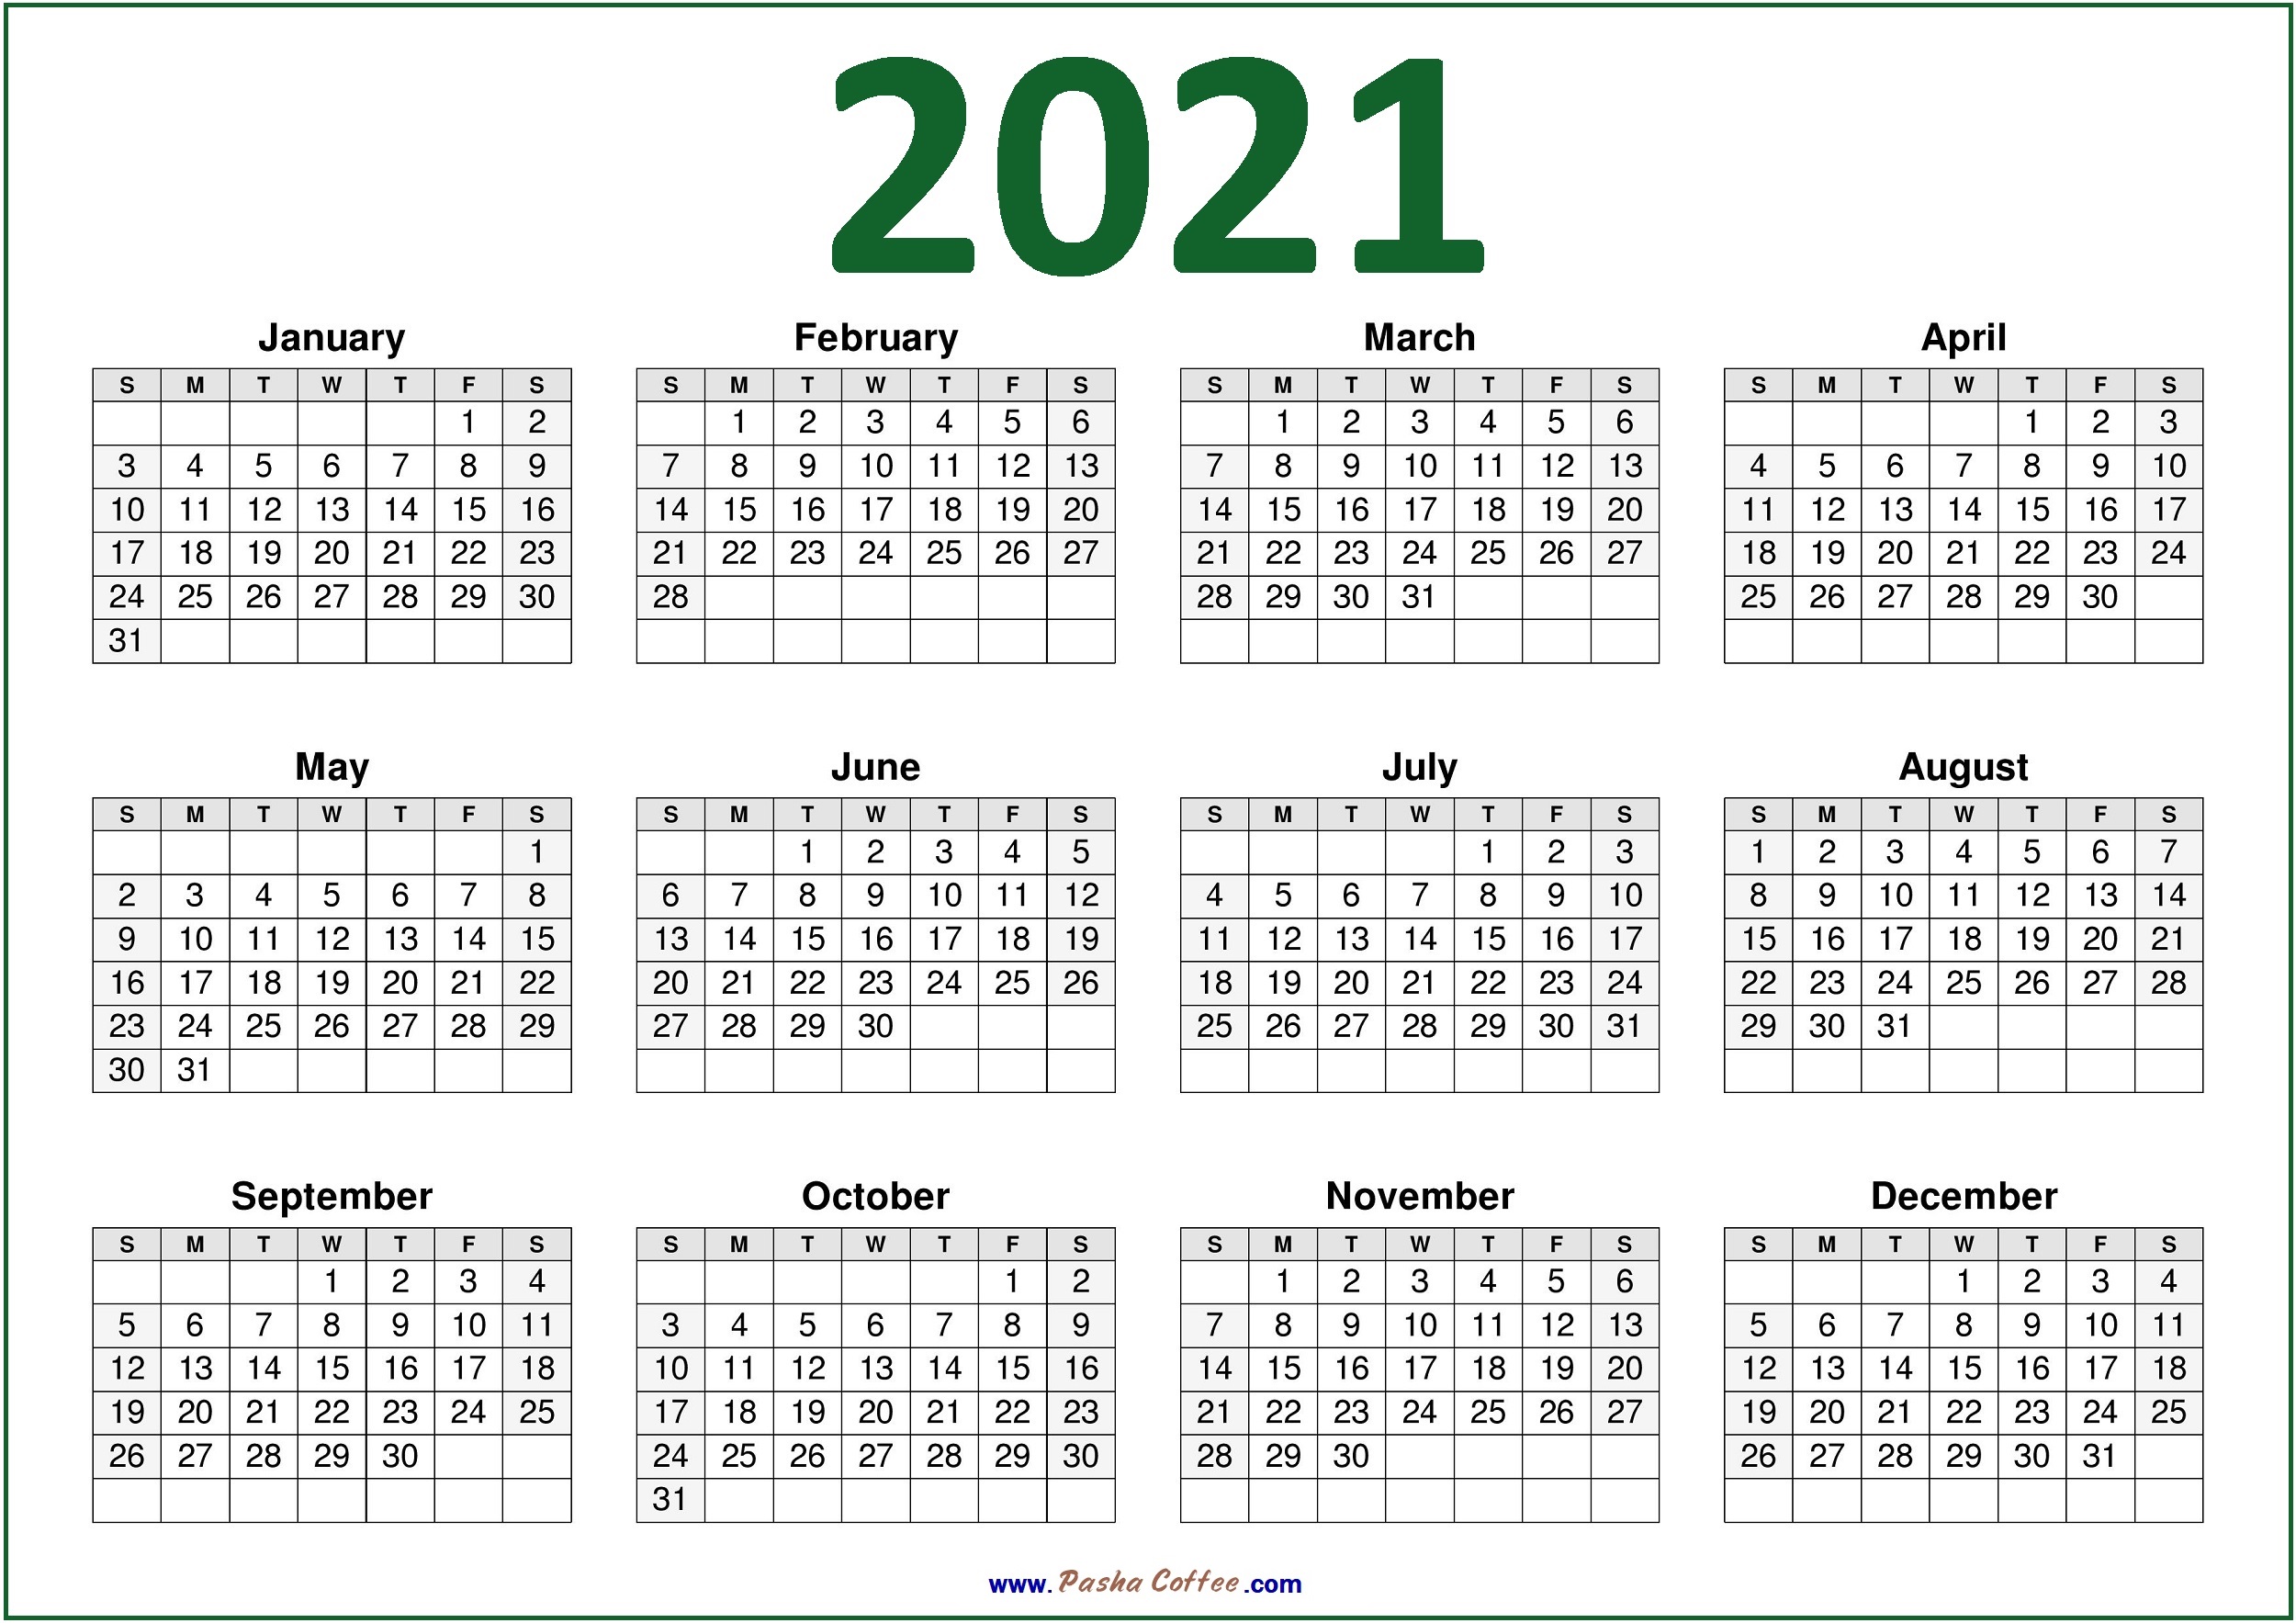 2021 USA CALENDAR – PRINTABLE CALENDAR Green